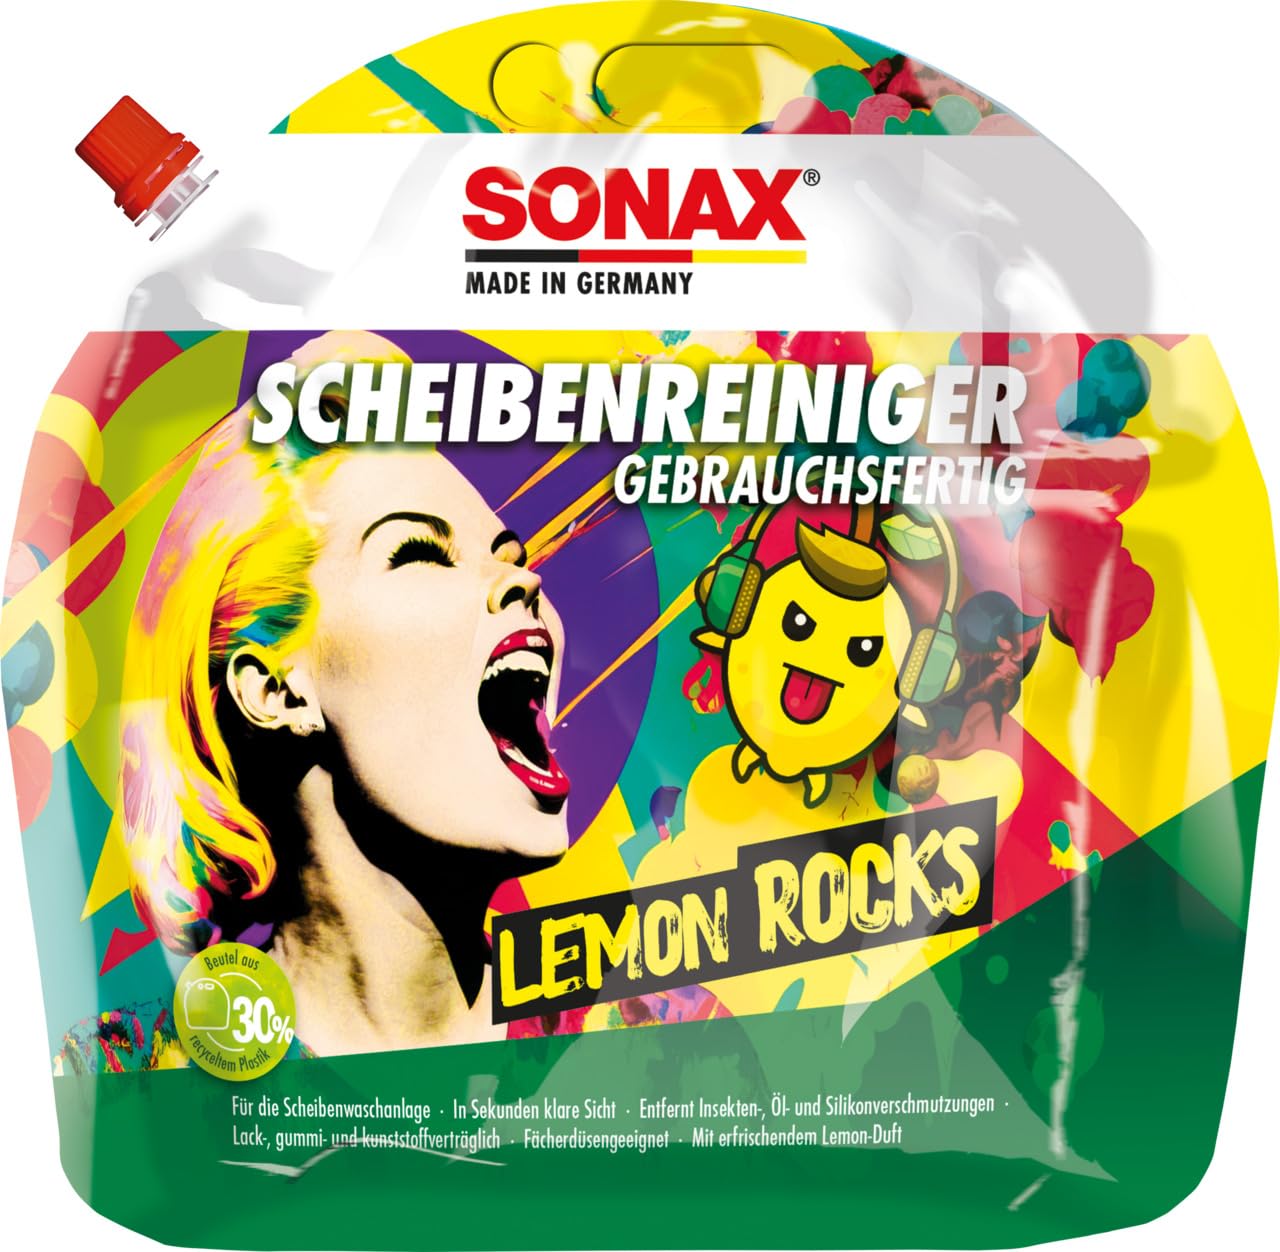 SONAX ScheibenReiniger gebrauchsfertig Lemon Rocks (3 Liter) entfernt Insekten-, Öl-, Silikon- und typische Straßenverschmutzungen | Art-Nr. 01604410 von SONAX